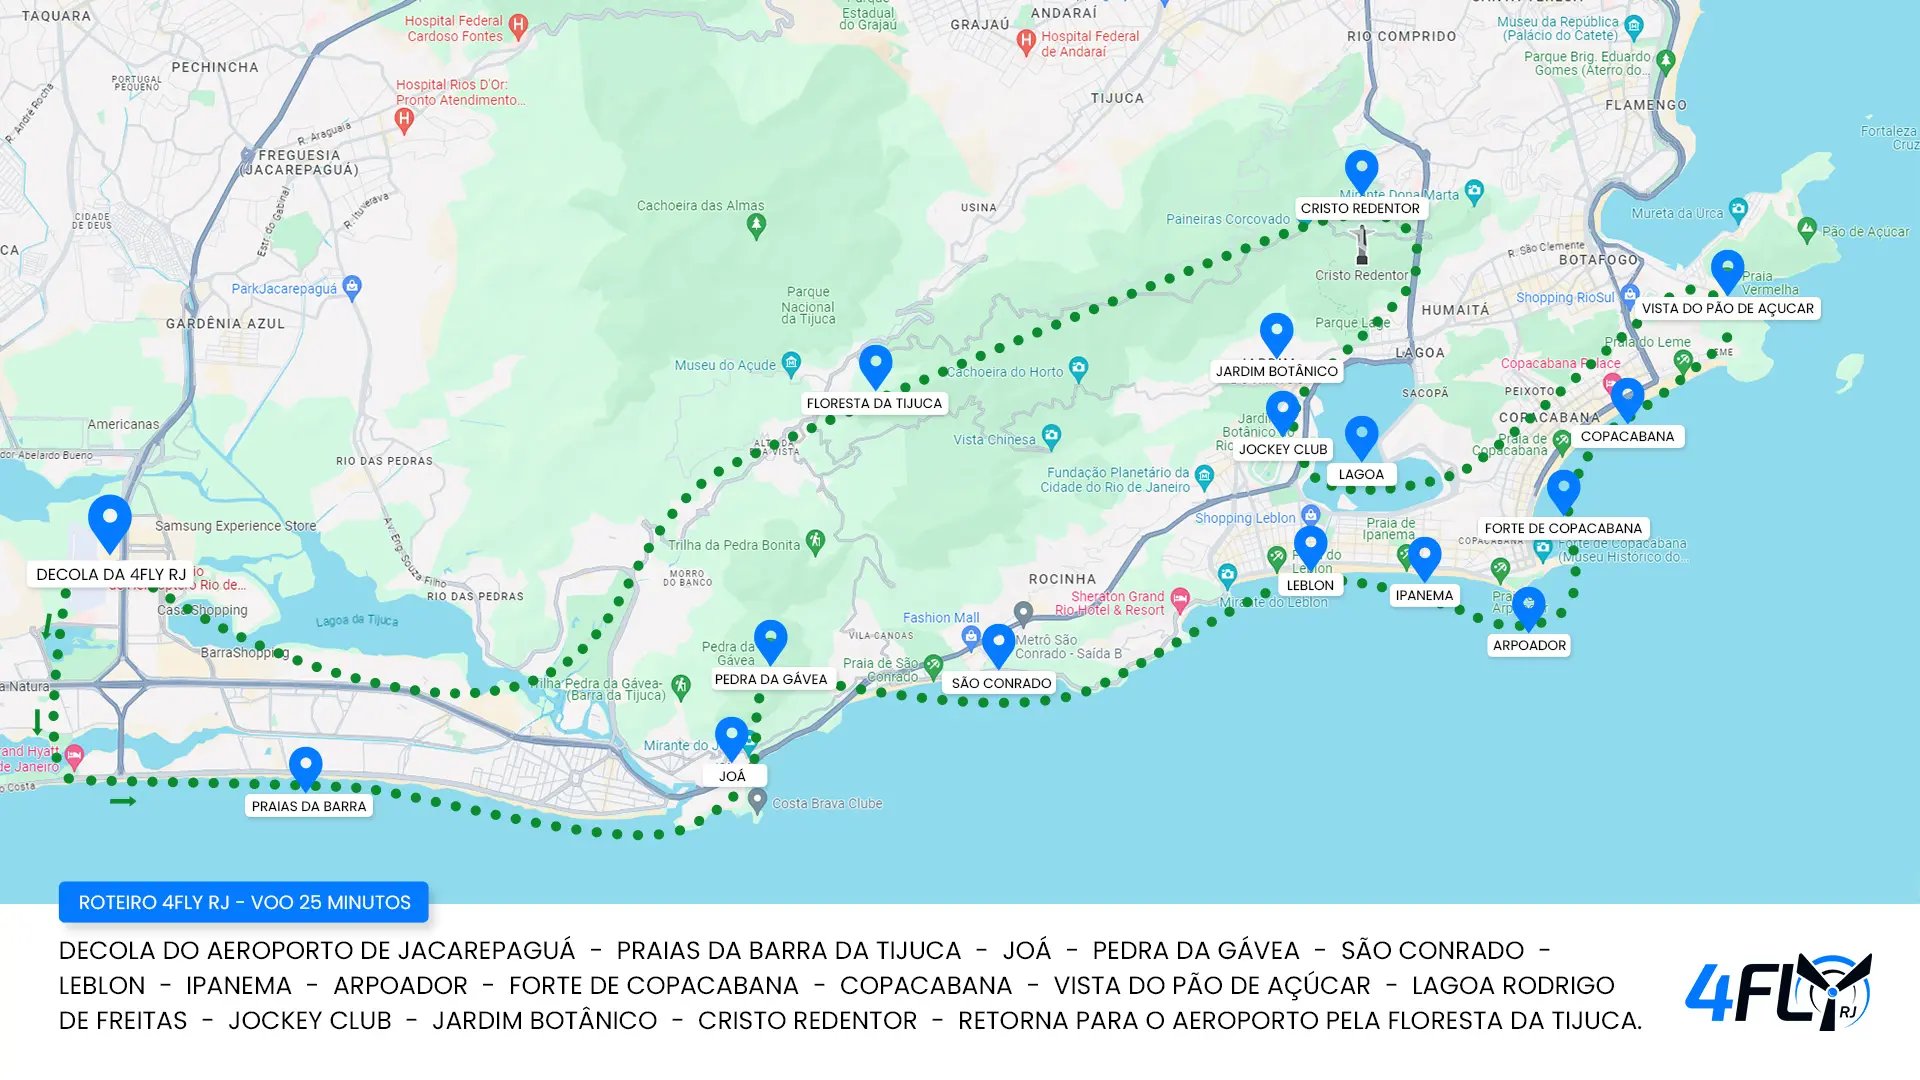 Mapa do roteiro do passeio de helicóptero no Rio de Janeiro 25 minutos - 4Fly RJ